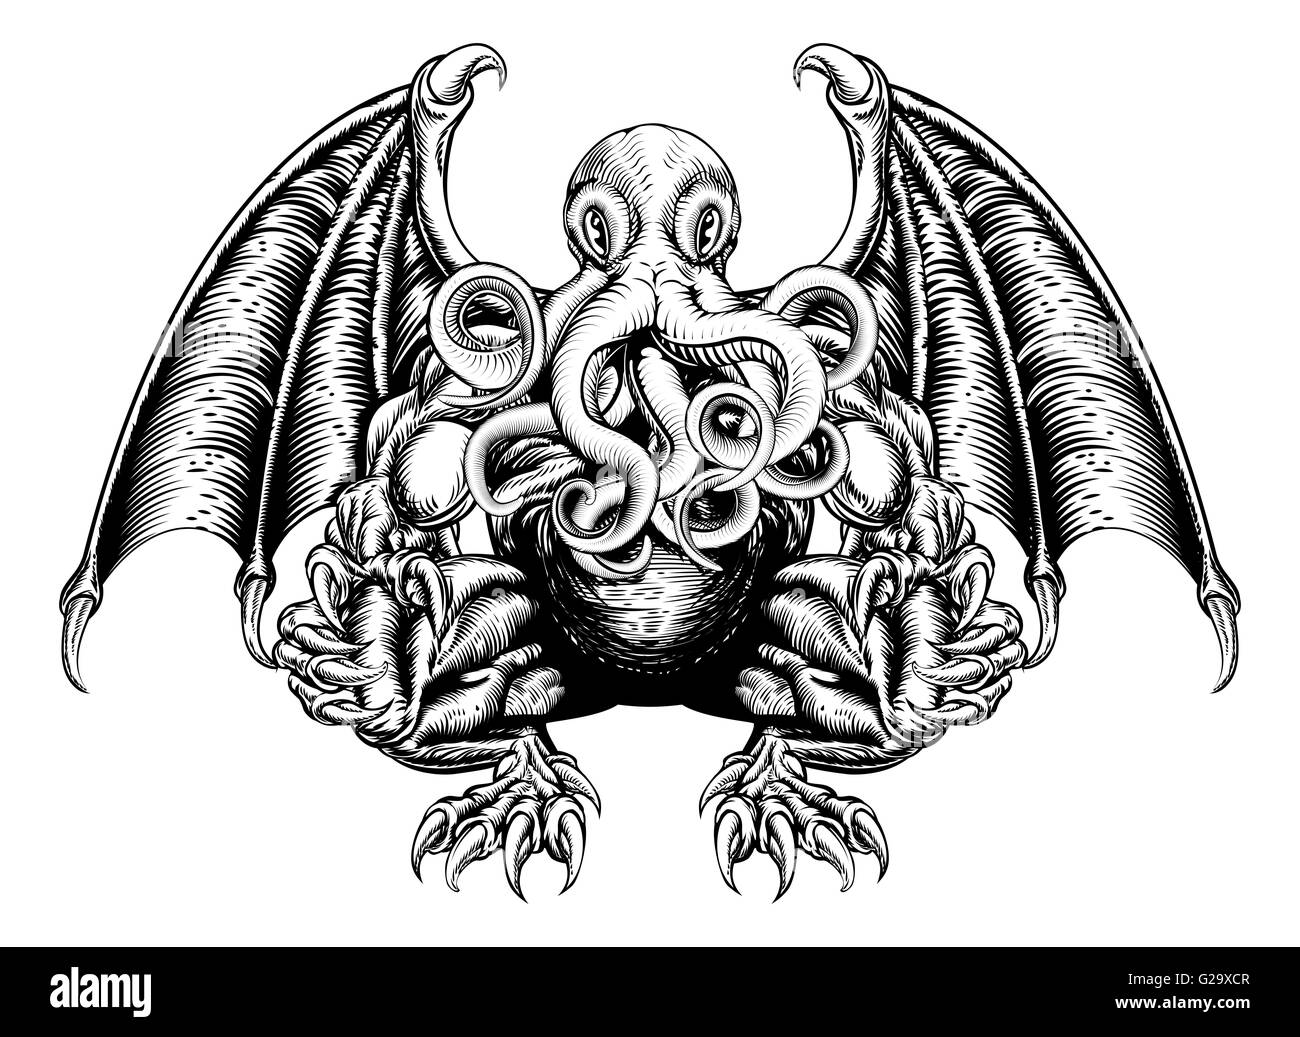 Une illustration originale d'un Cthulhu monster dans un style sur bois Banque D'Images